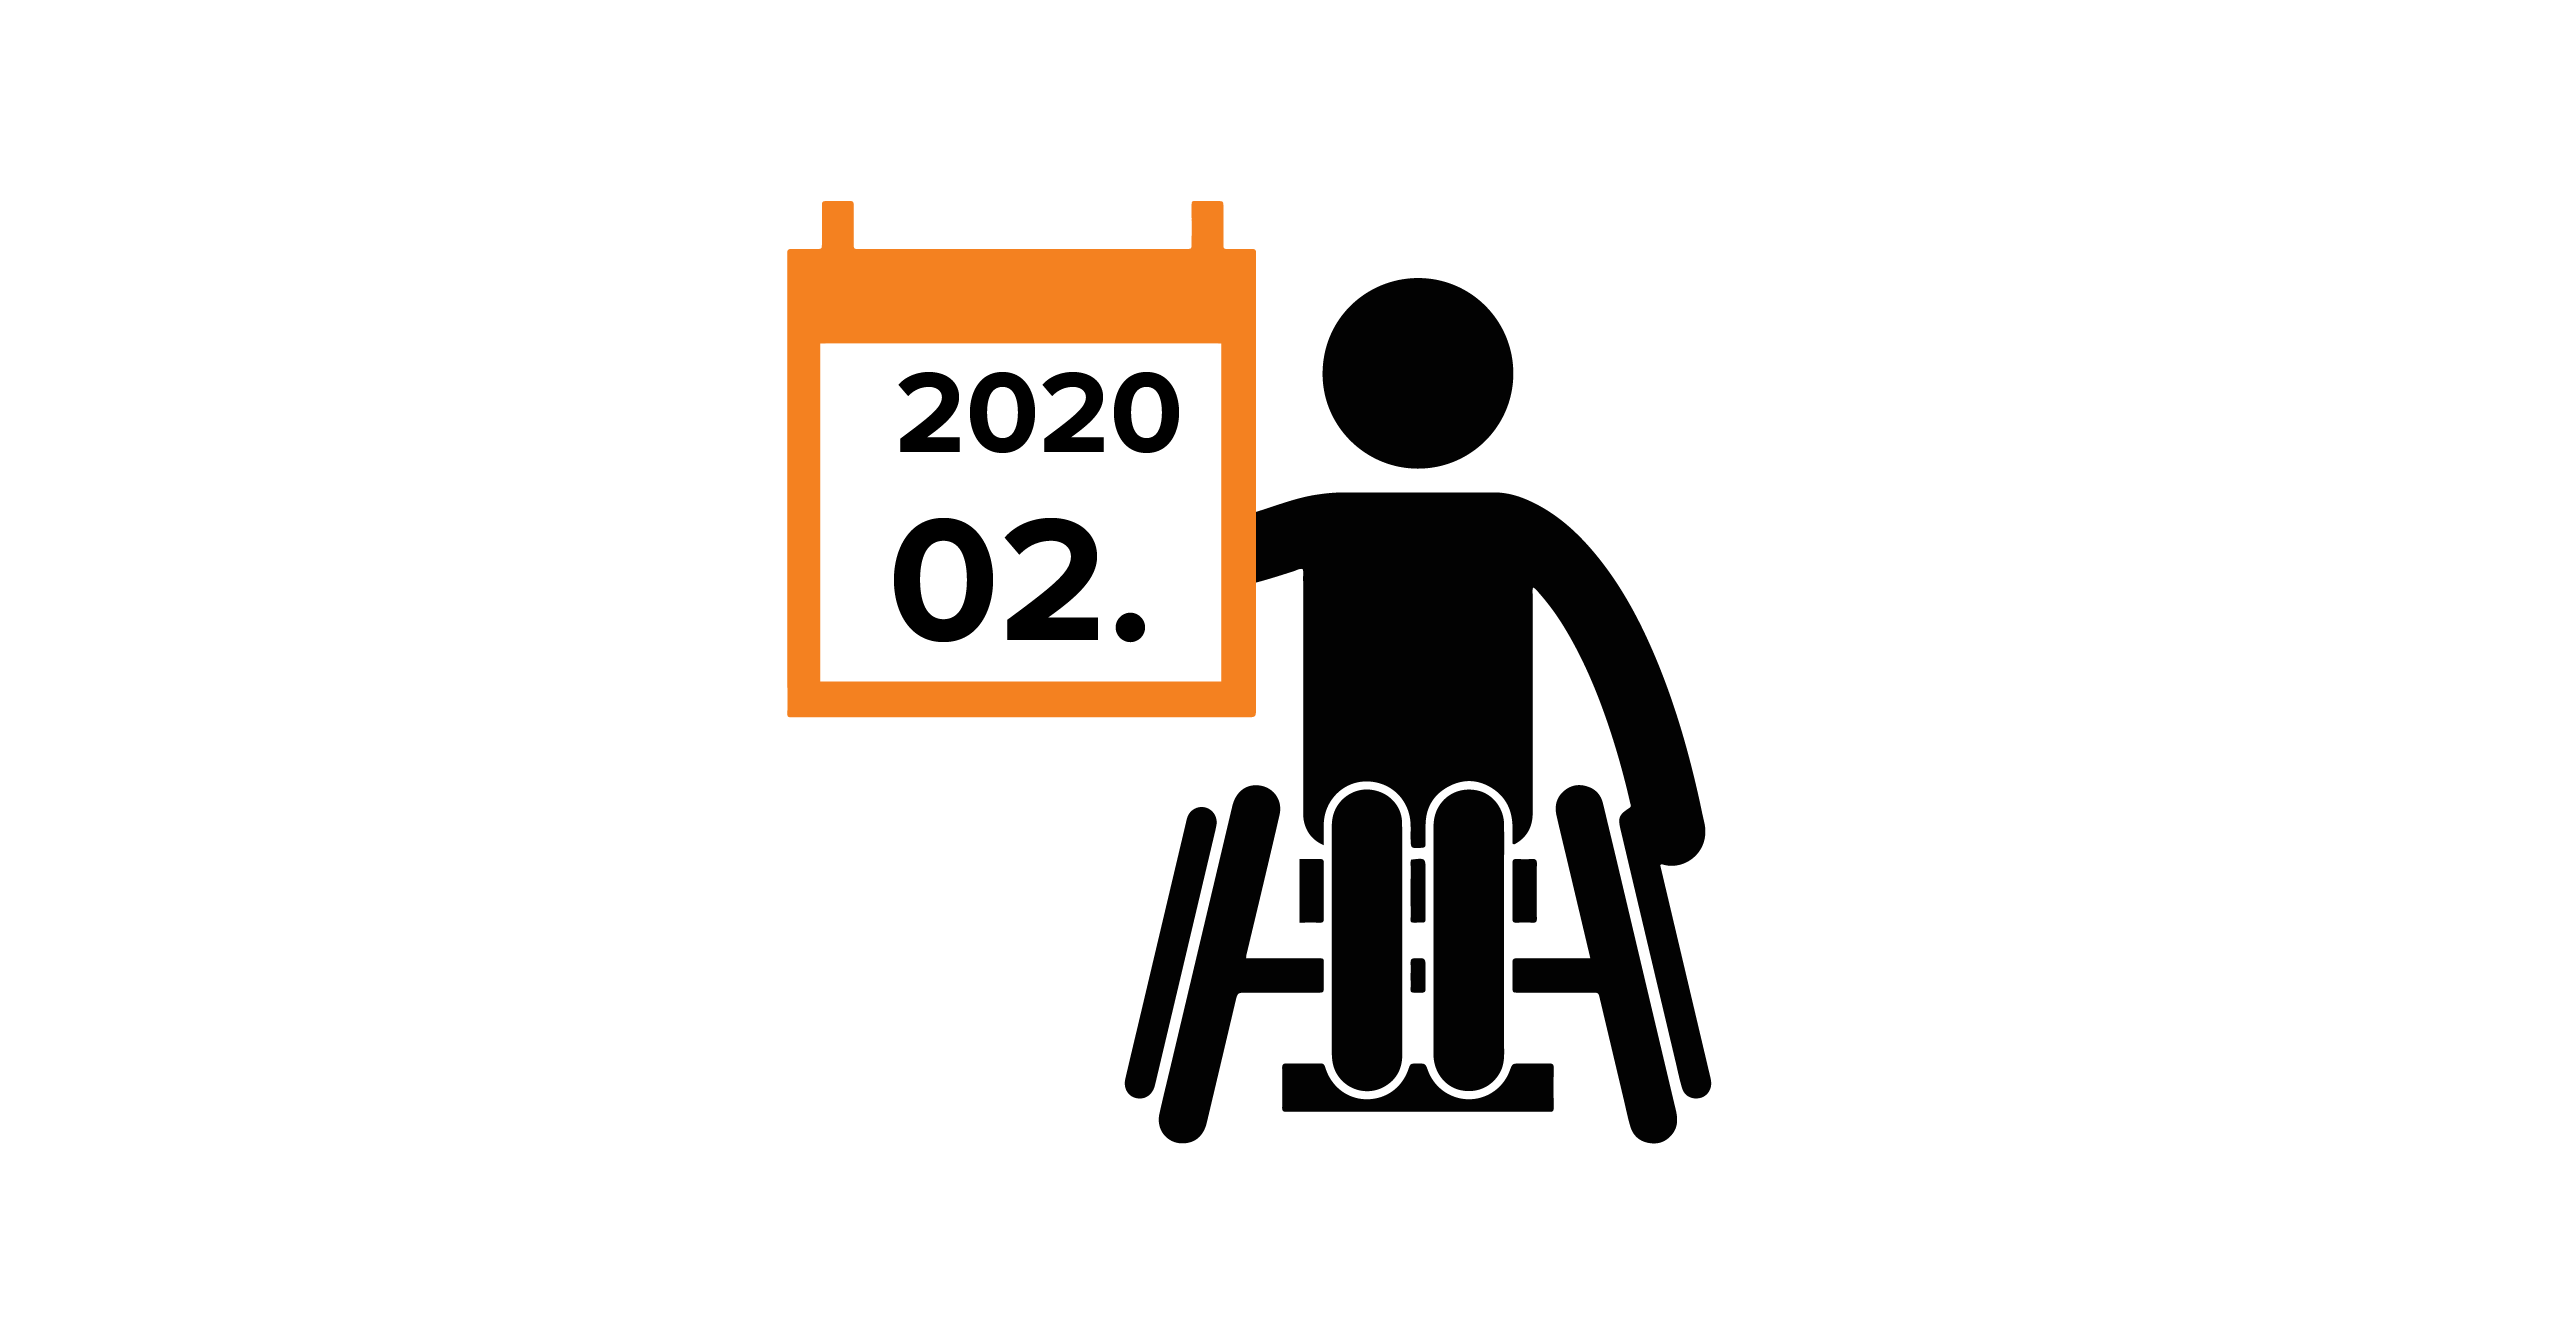 Na grafice człowiek na wózku, trzymający kalendarz z datą 02.2020